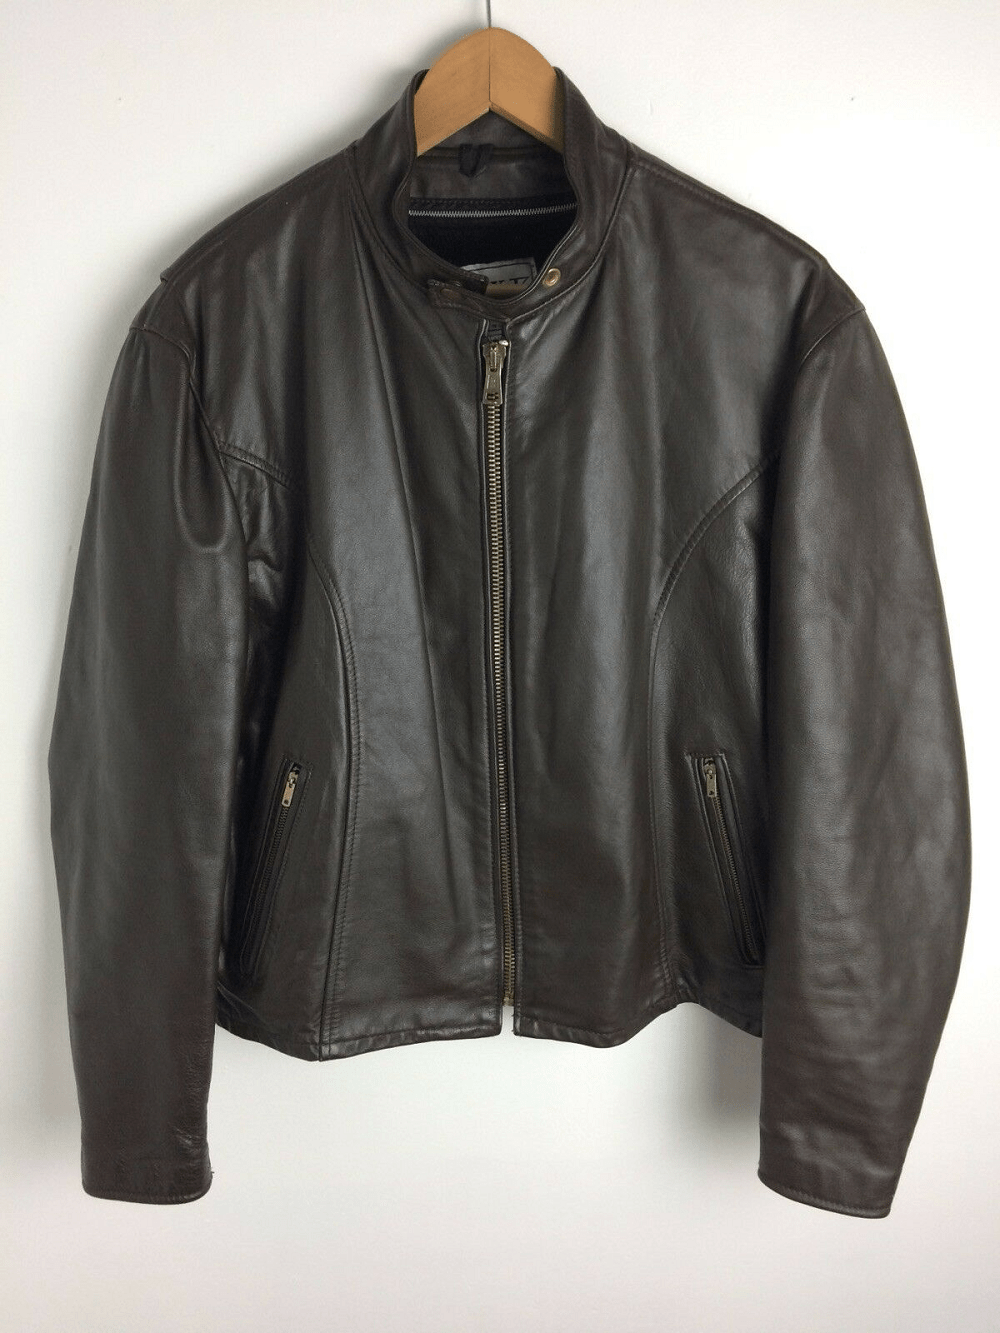 Park V Leather Jacket | Limited Offer Buy Now